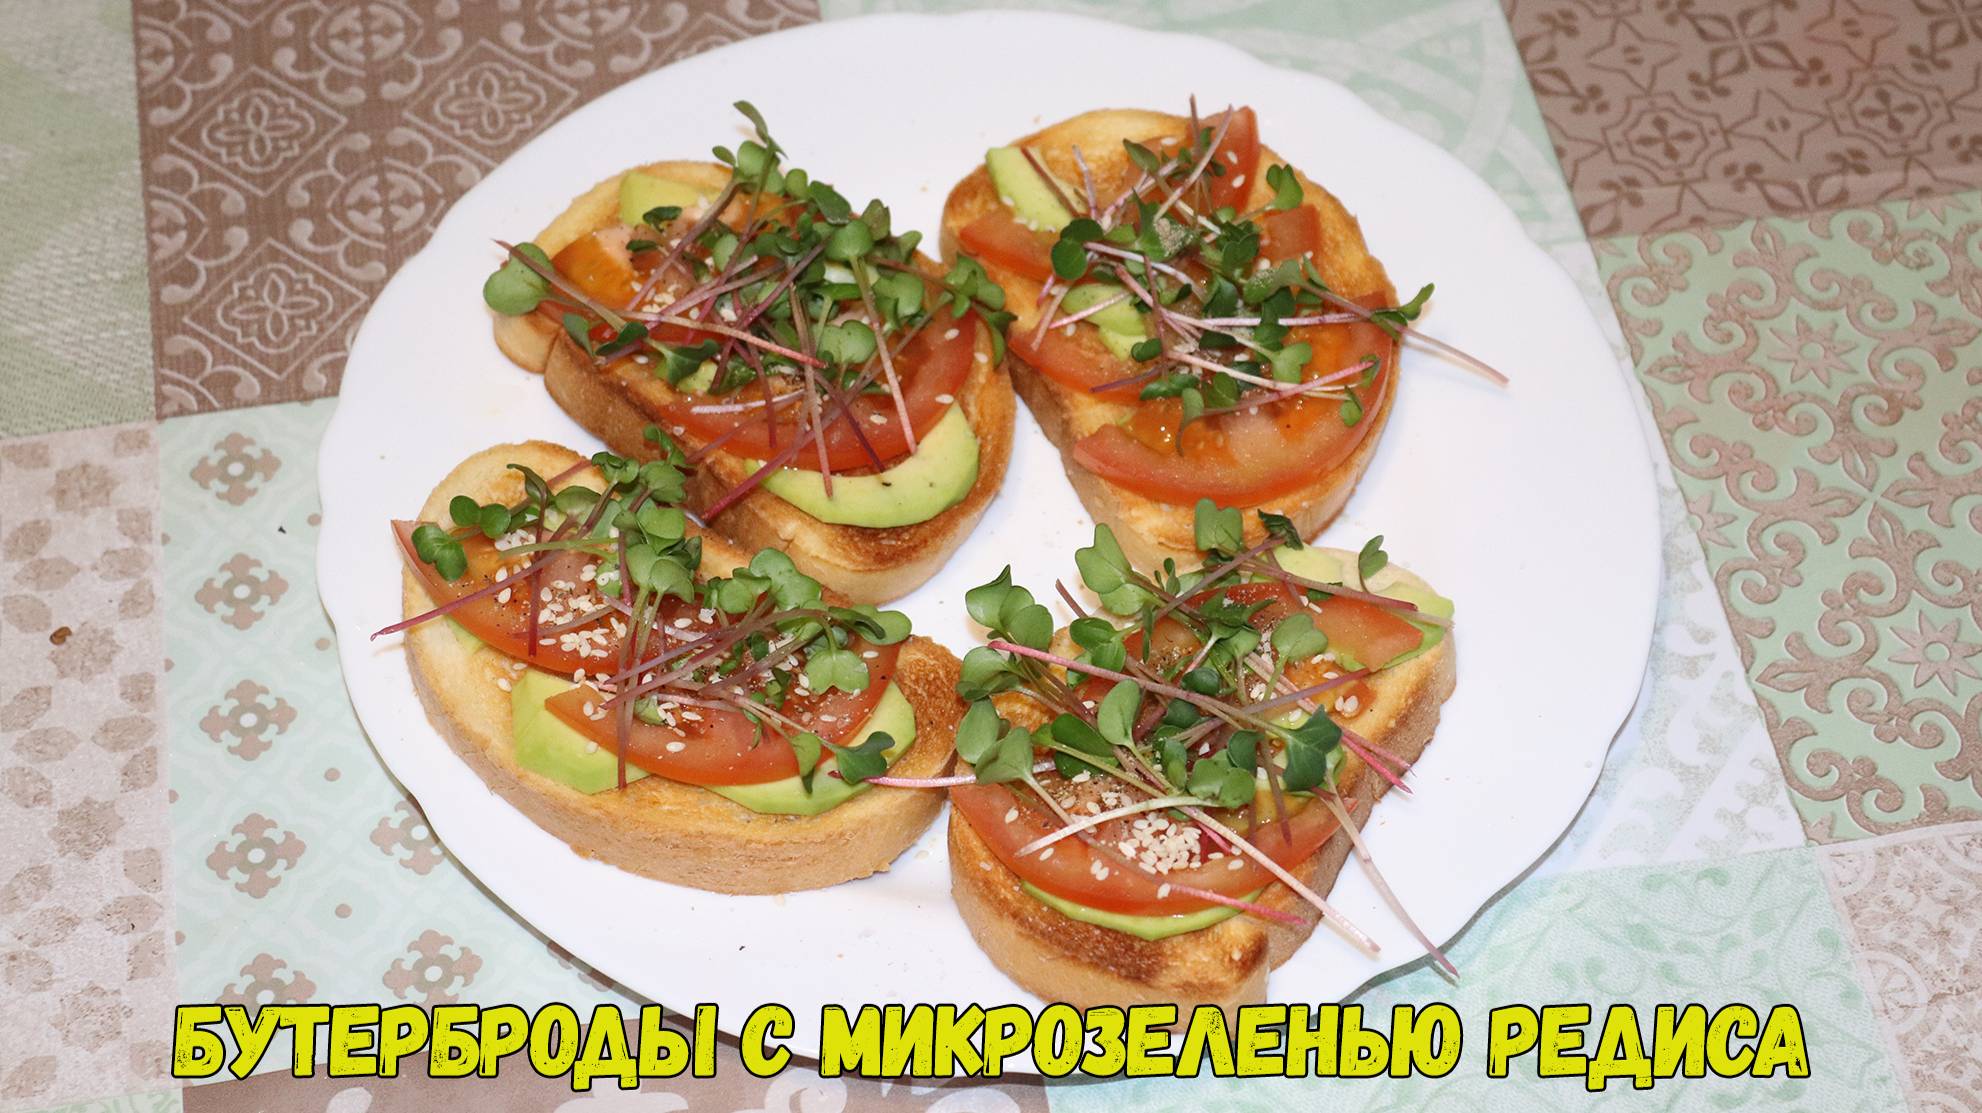 Рецепт - Бутерброды с микрозеленью редиса. Рецепты с микрозеленью